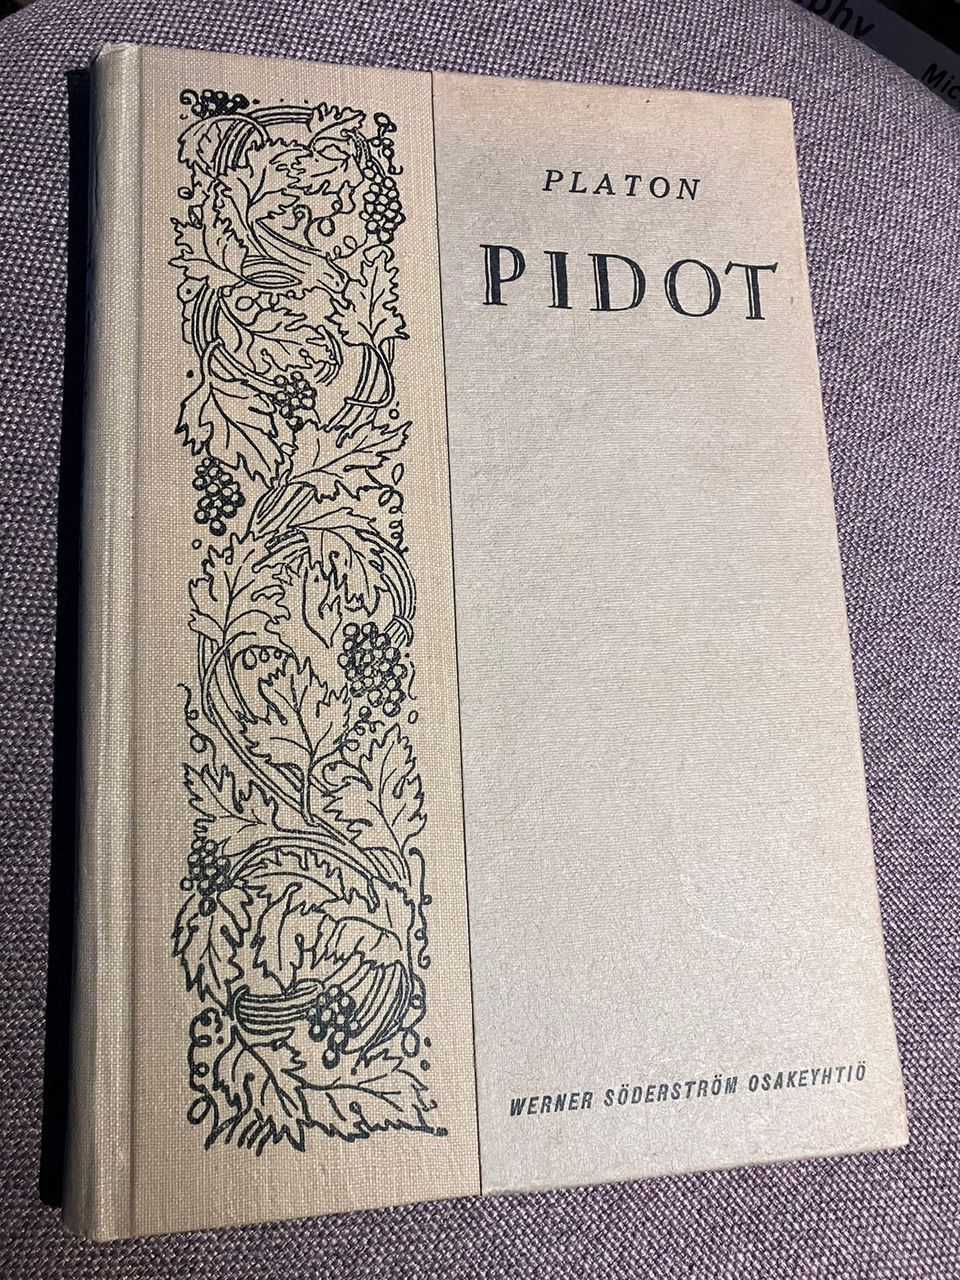 Platon Pidot